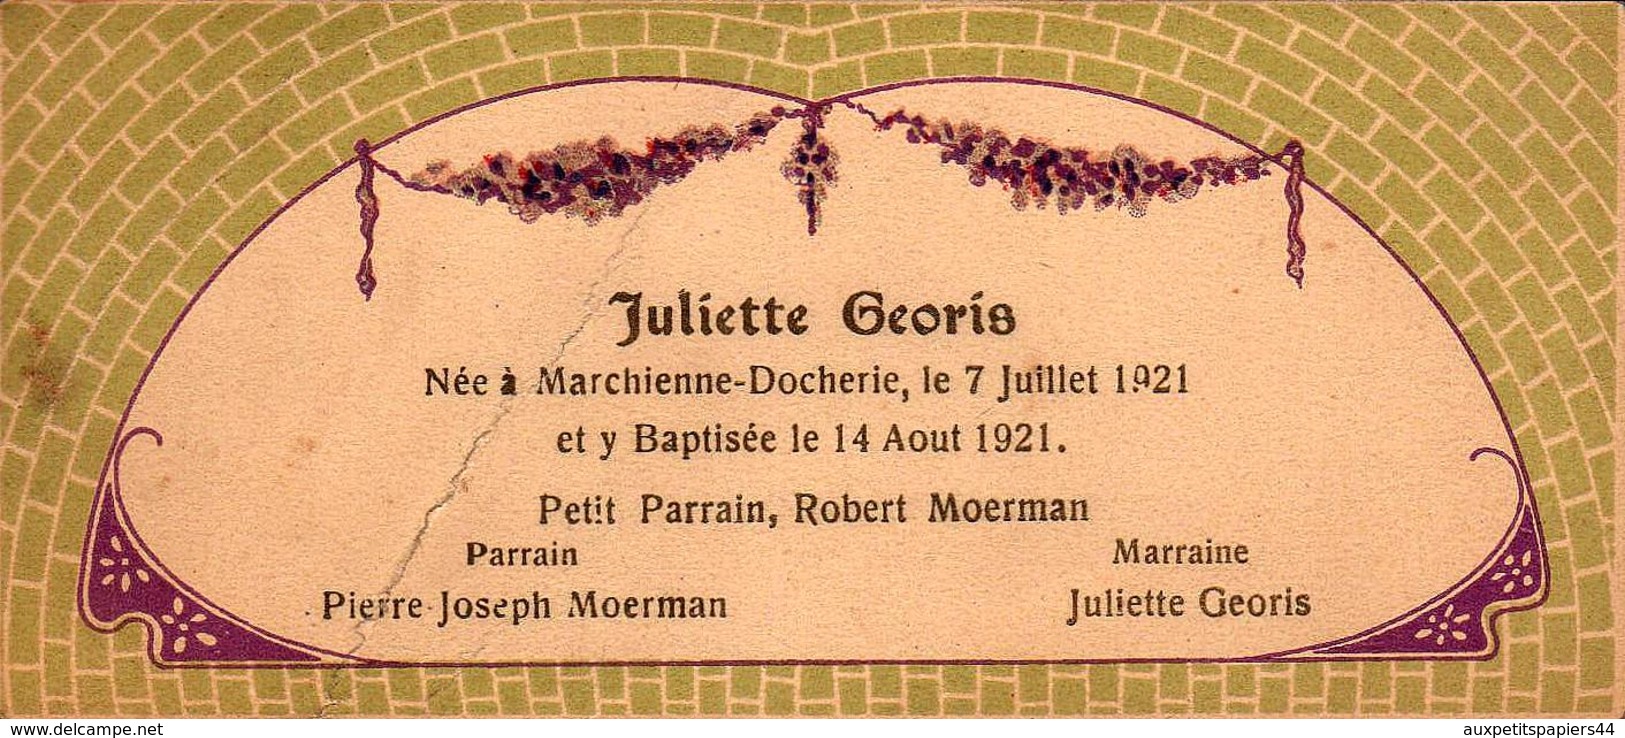 Lot de 14 Faire-Part de Naissance et Baptêmes de 1918 à 1963 - Bon état avec noms et prénoms des parrains & Marraines